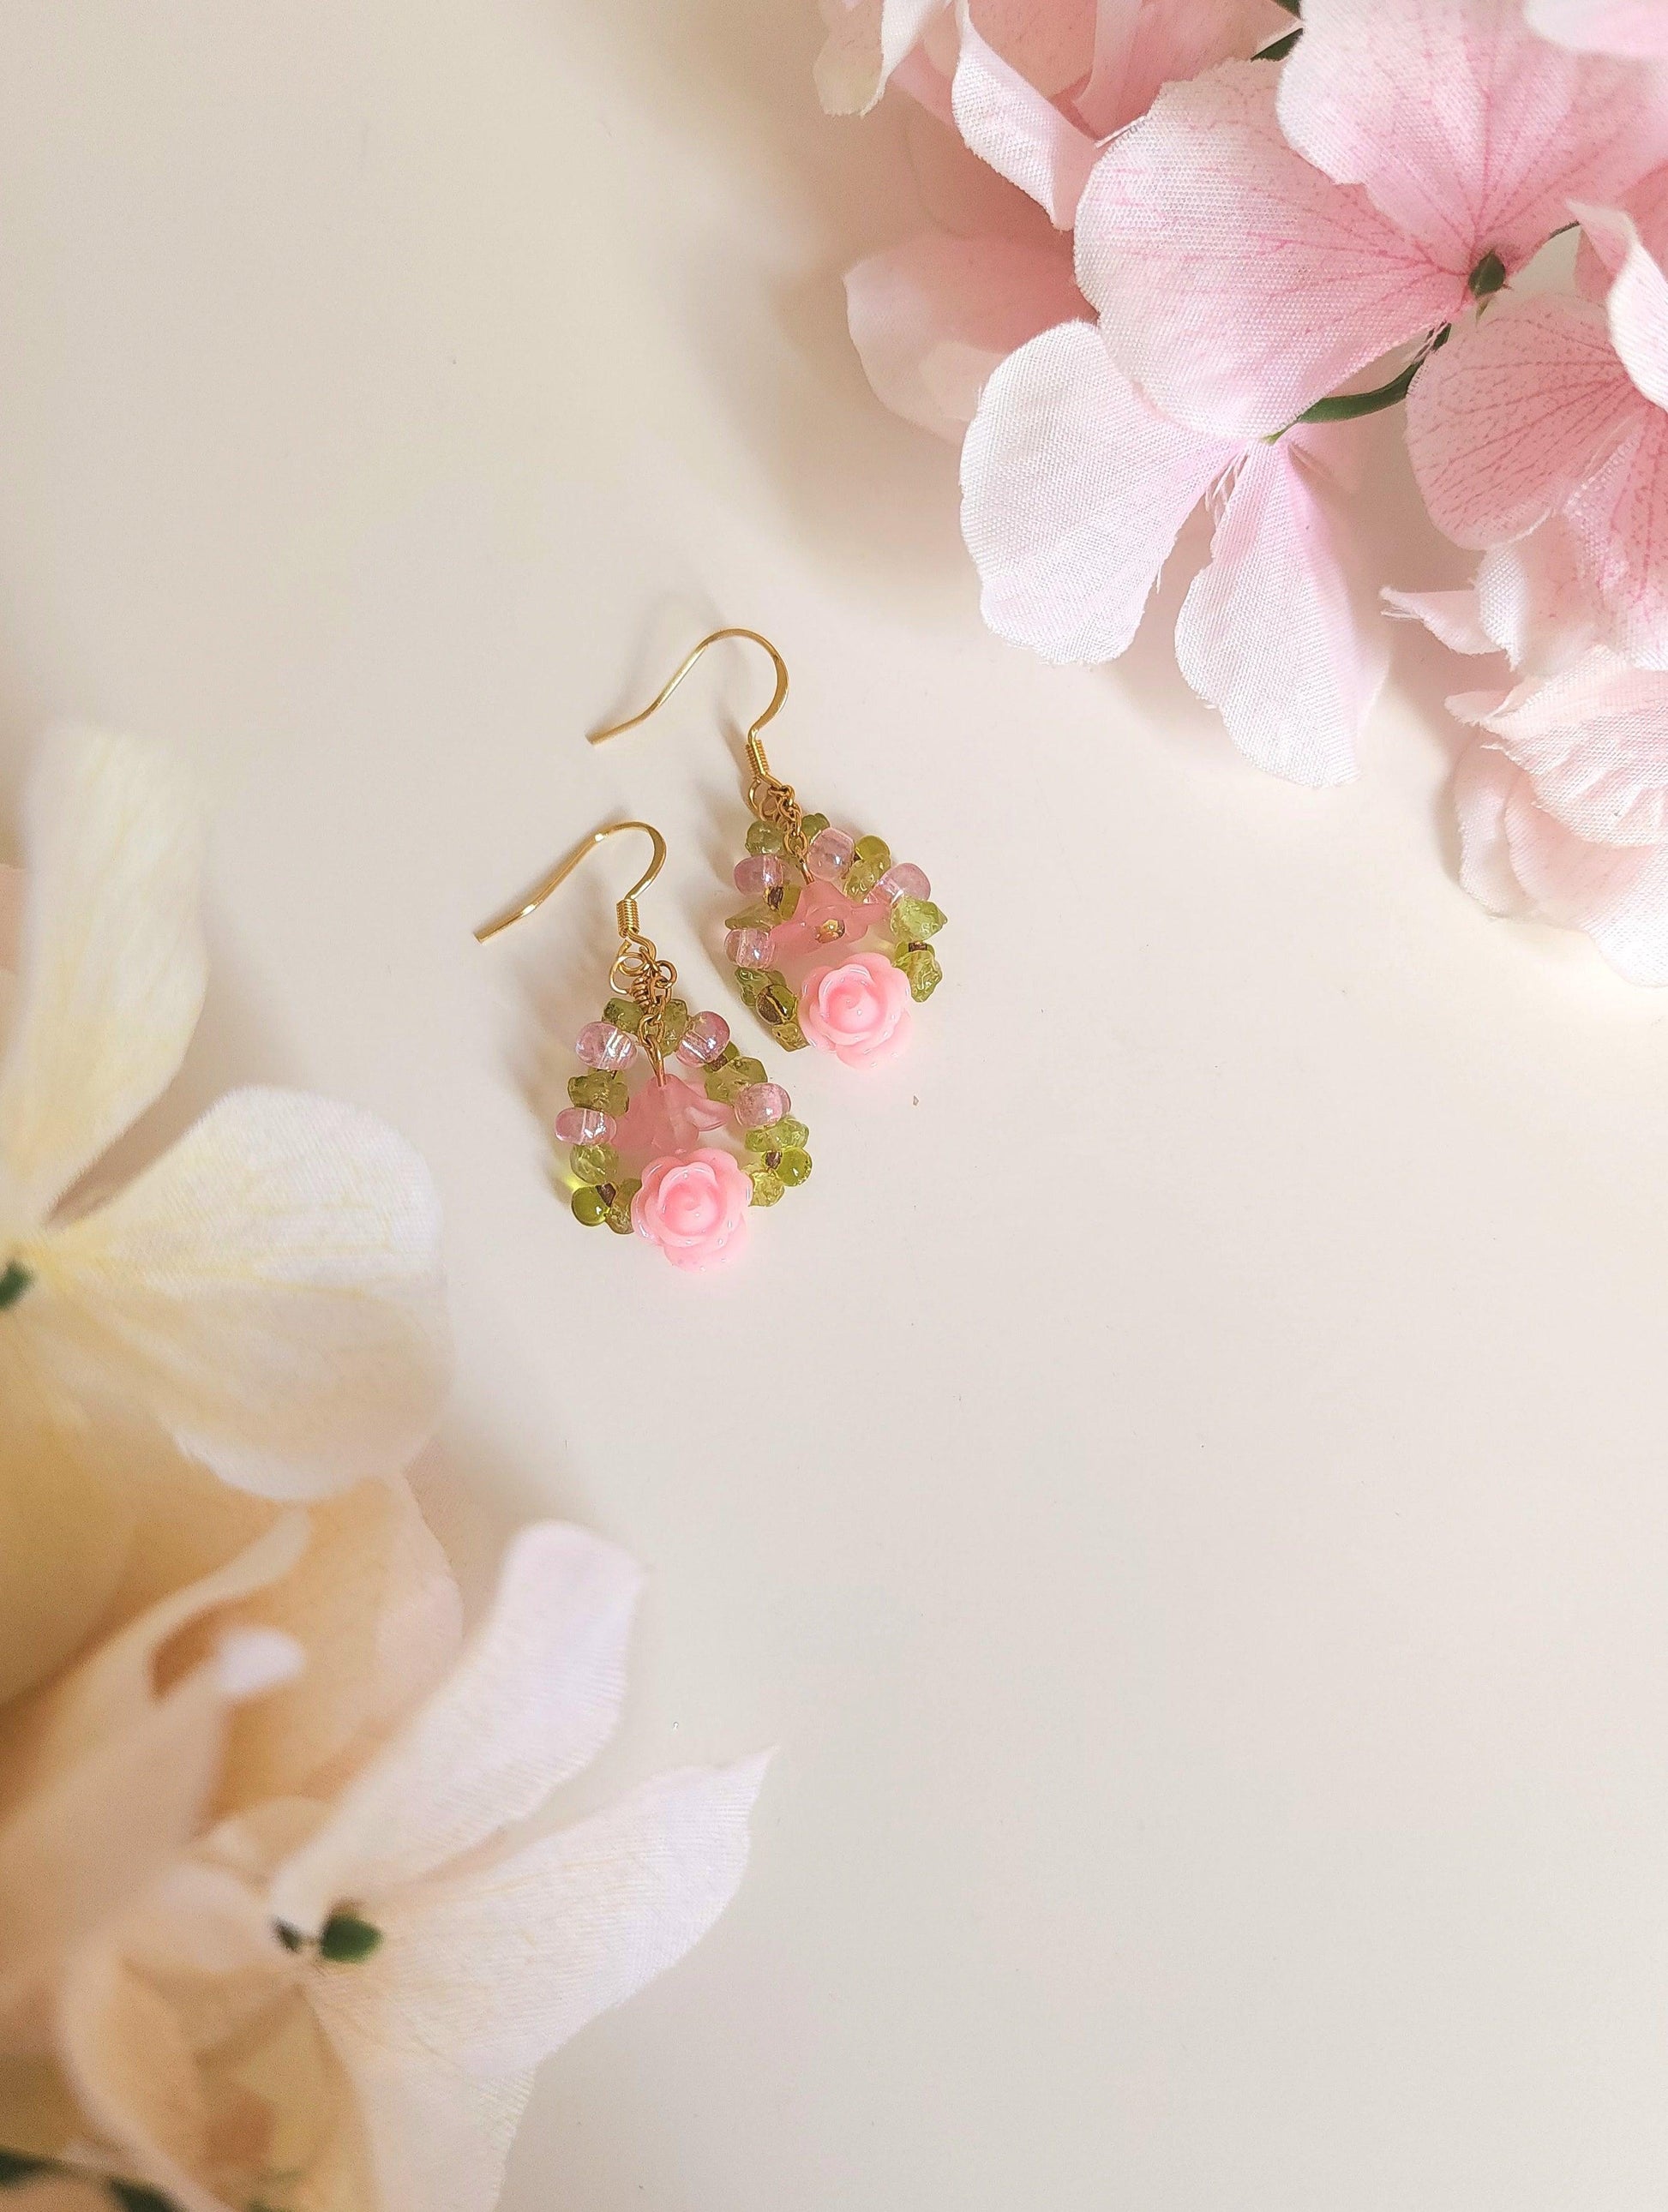 Vintage Rose Garden Earrings - By Cocoyu